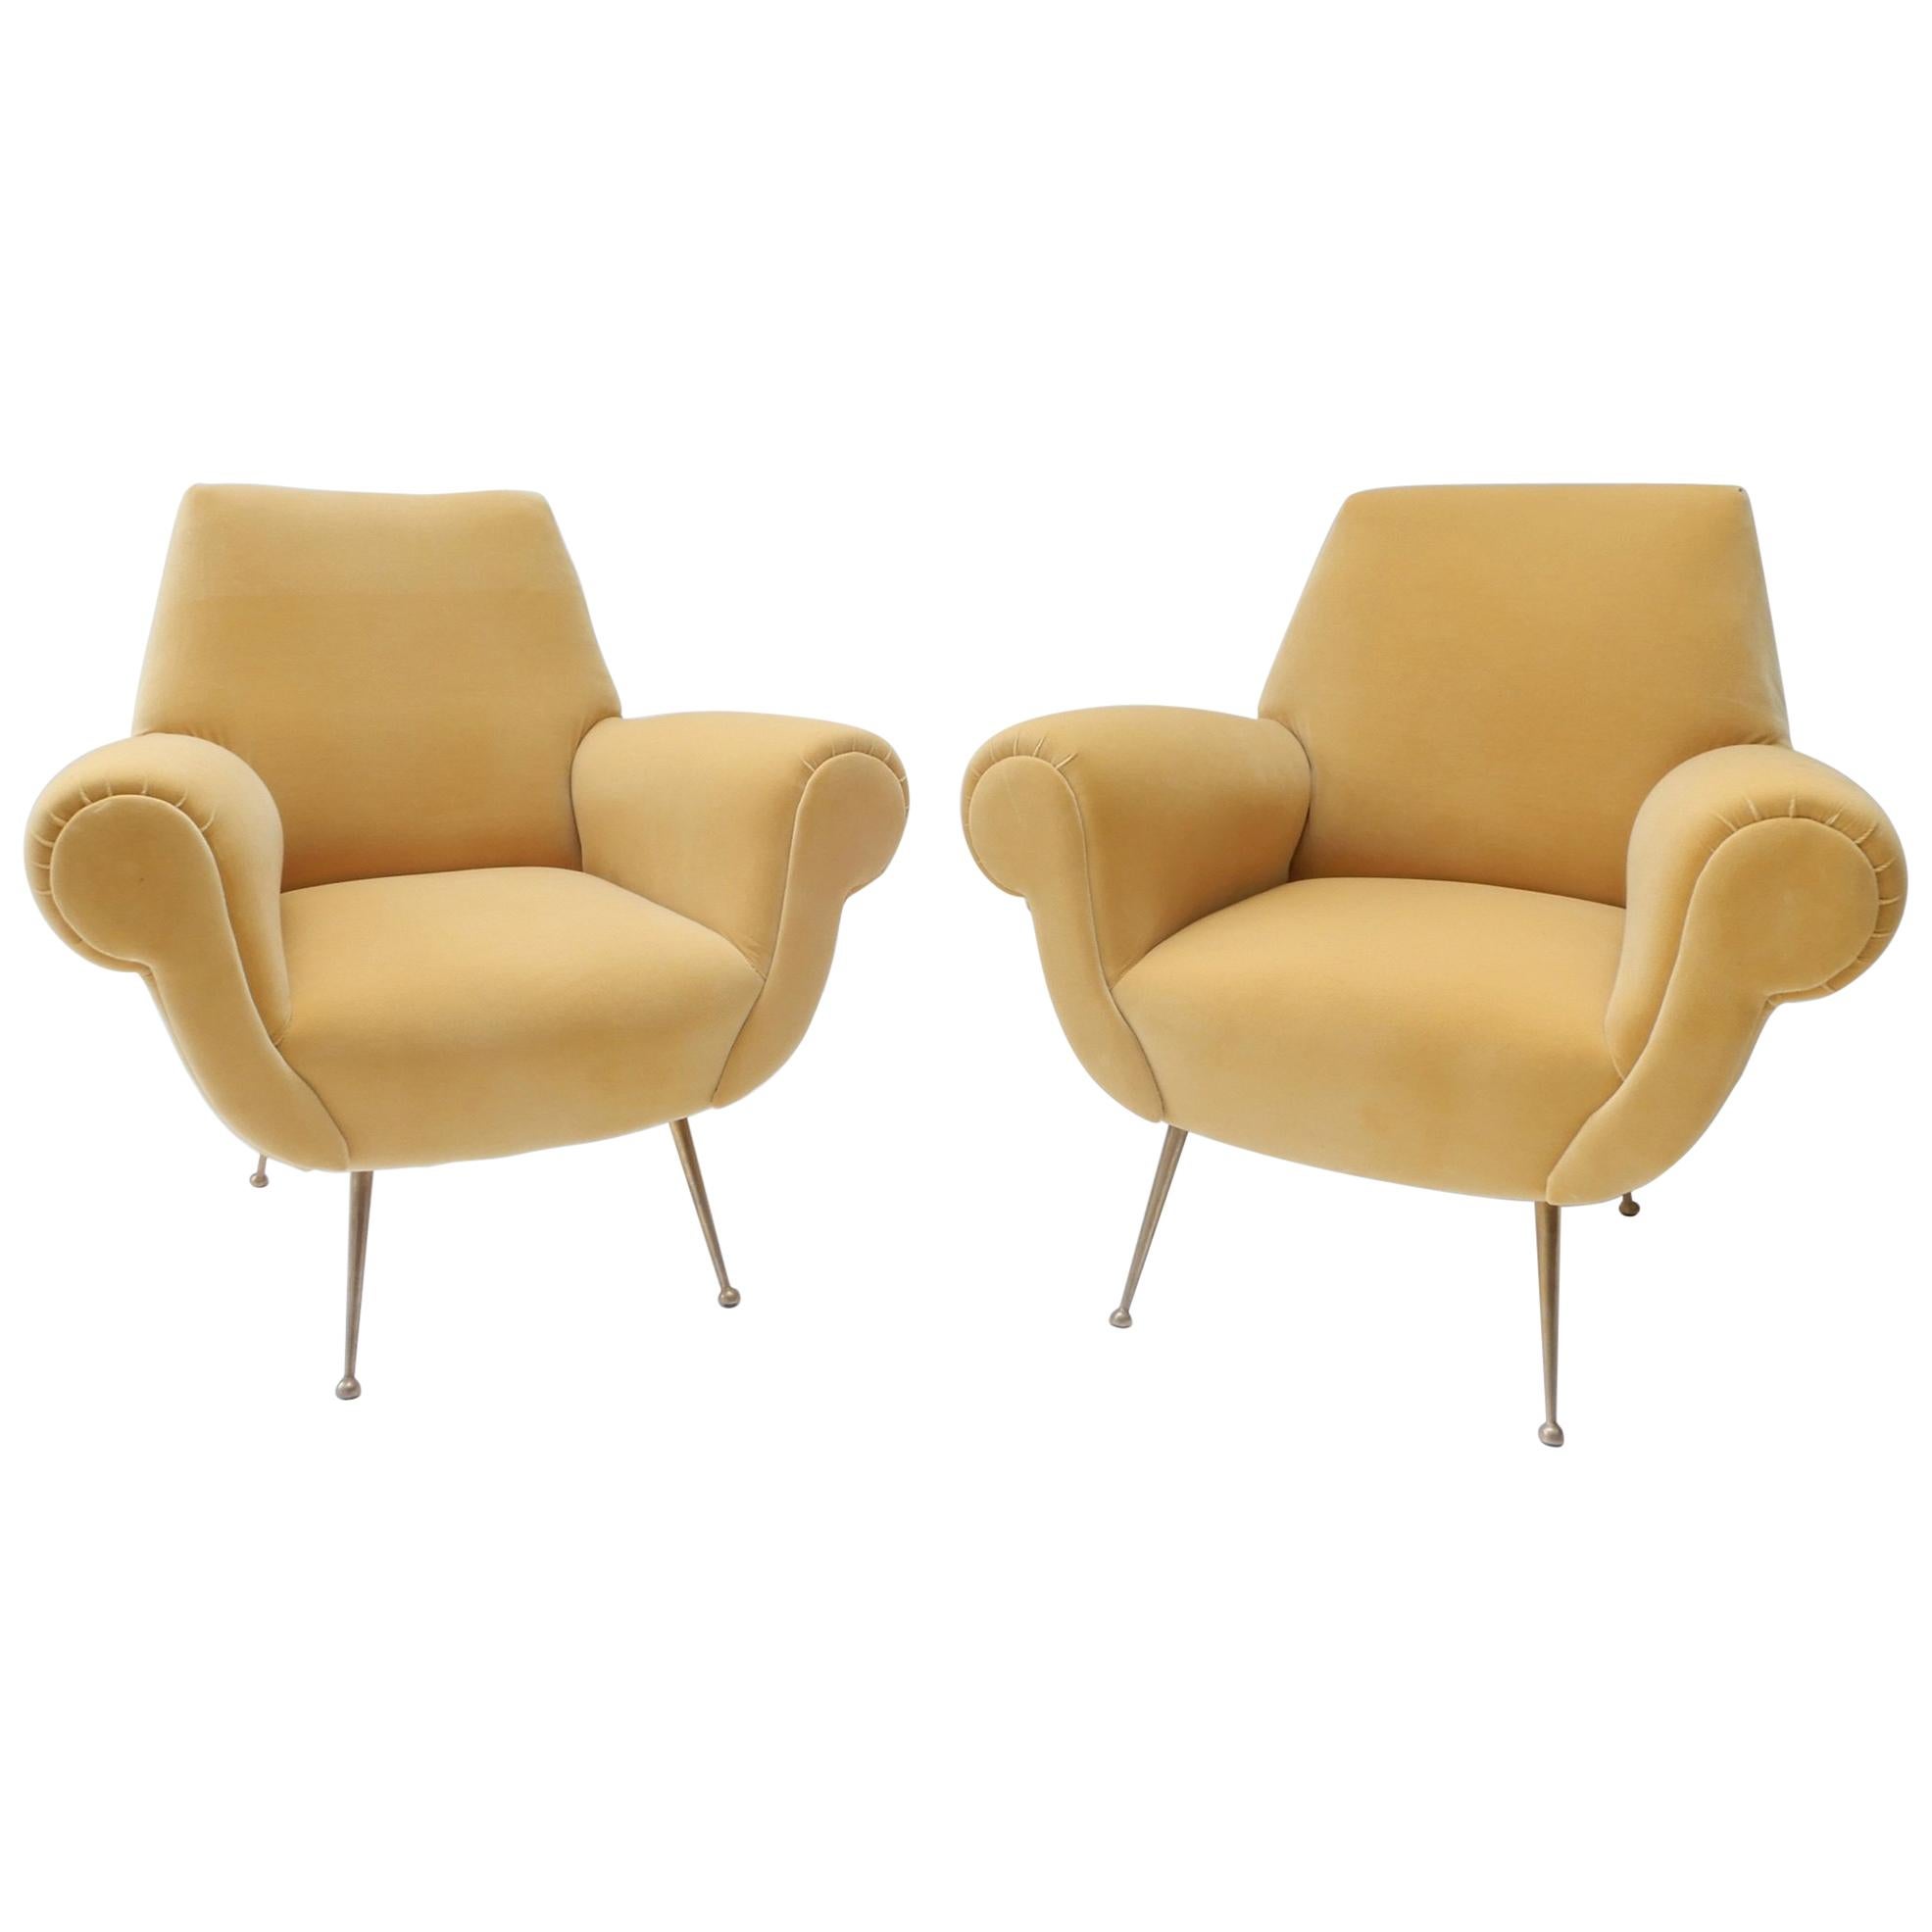 Pair of Italian Mid-Century Modern Style Armchairs in Yellow Velvet